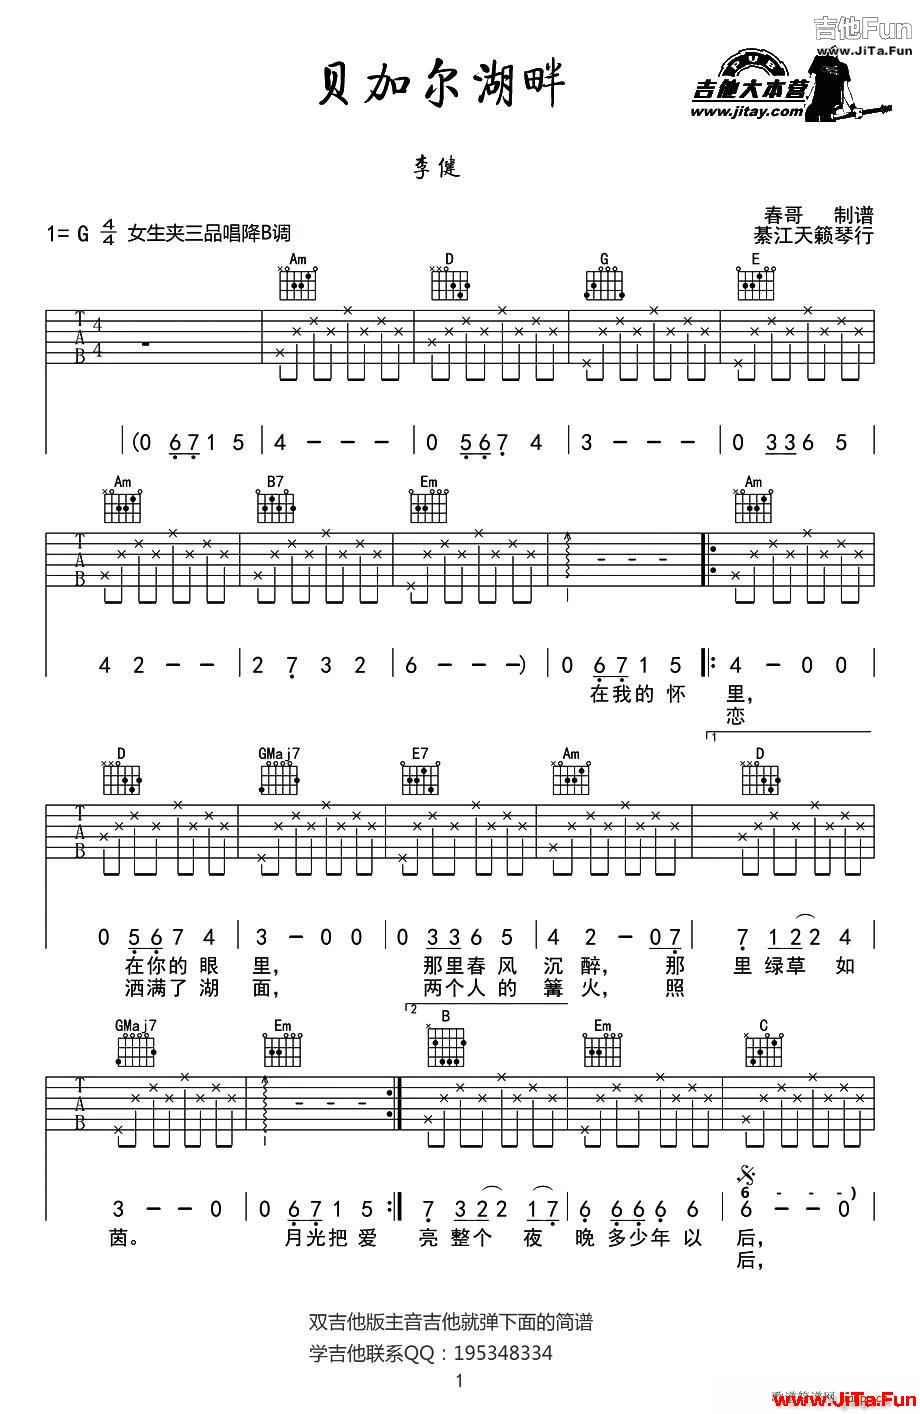 貝加爾湖畔 春哥制譜版(吉他譜)1